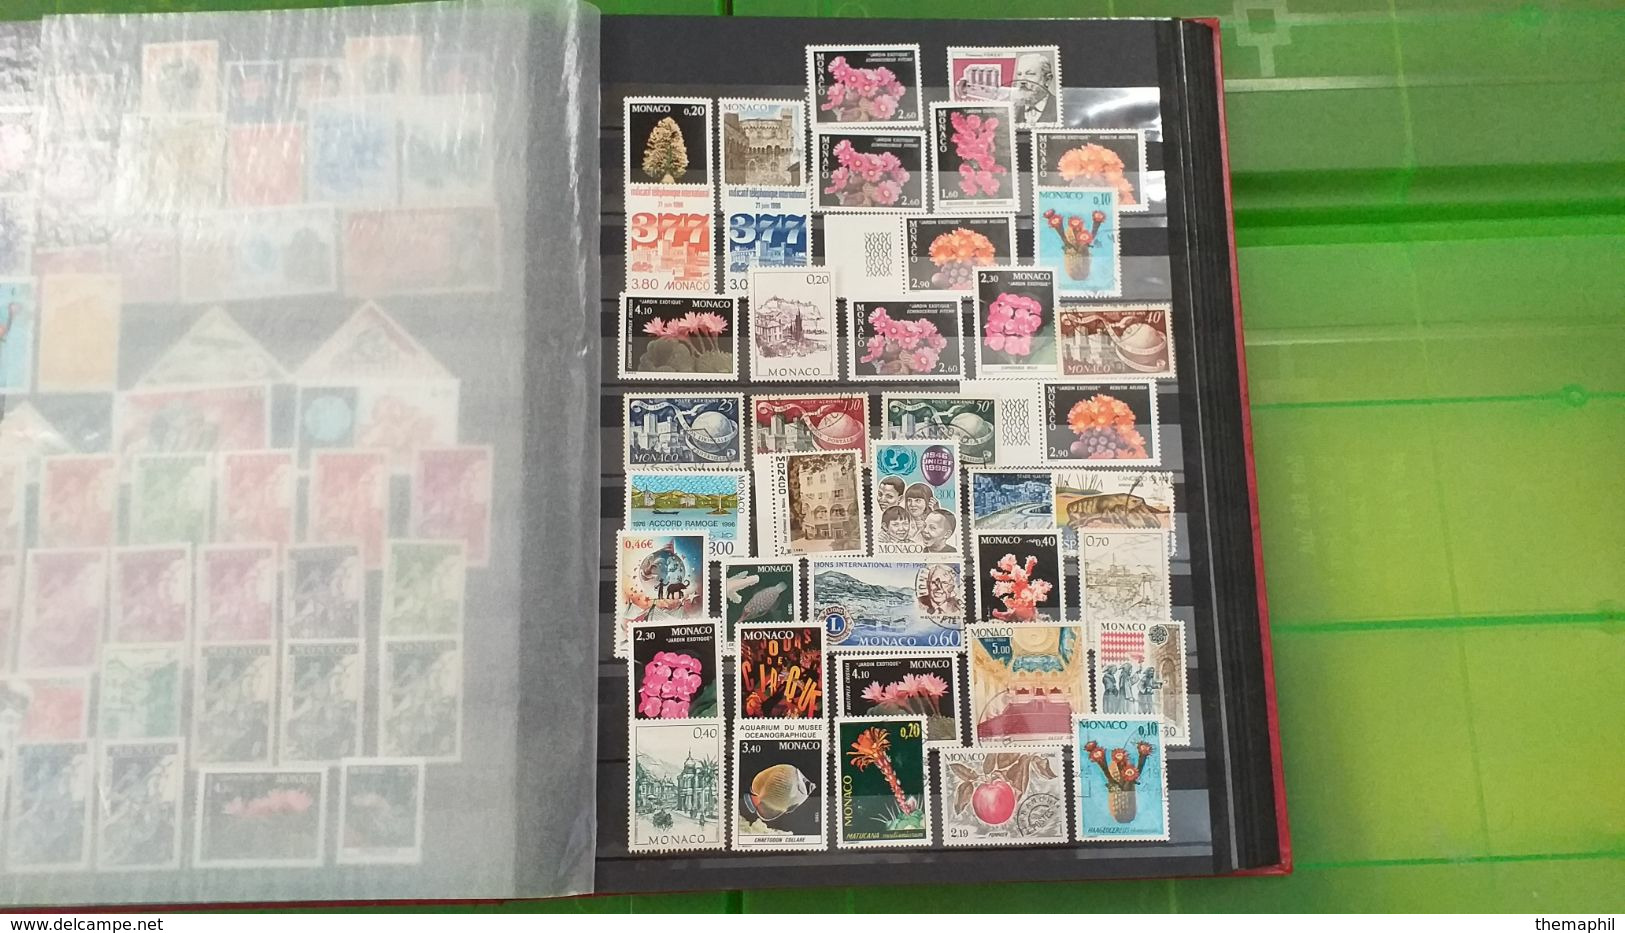 lot n° TH 480  MONACO un bon classeur de timbres neufs xx et quelques obl.